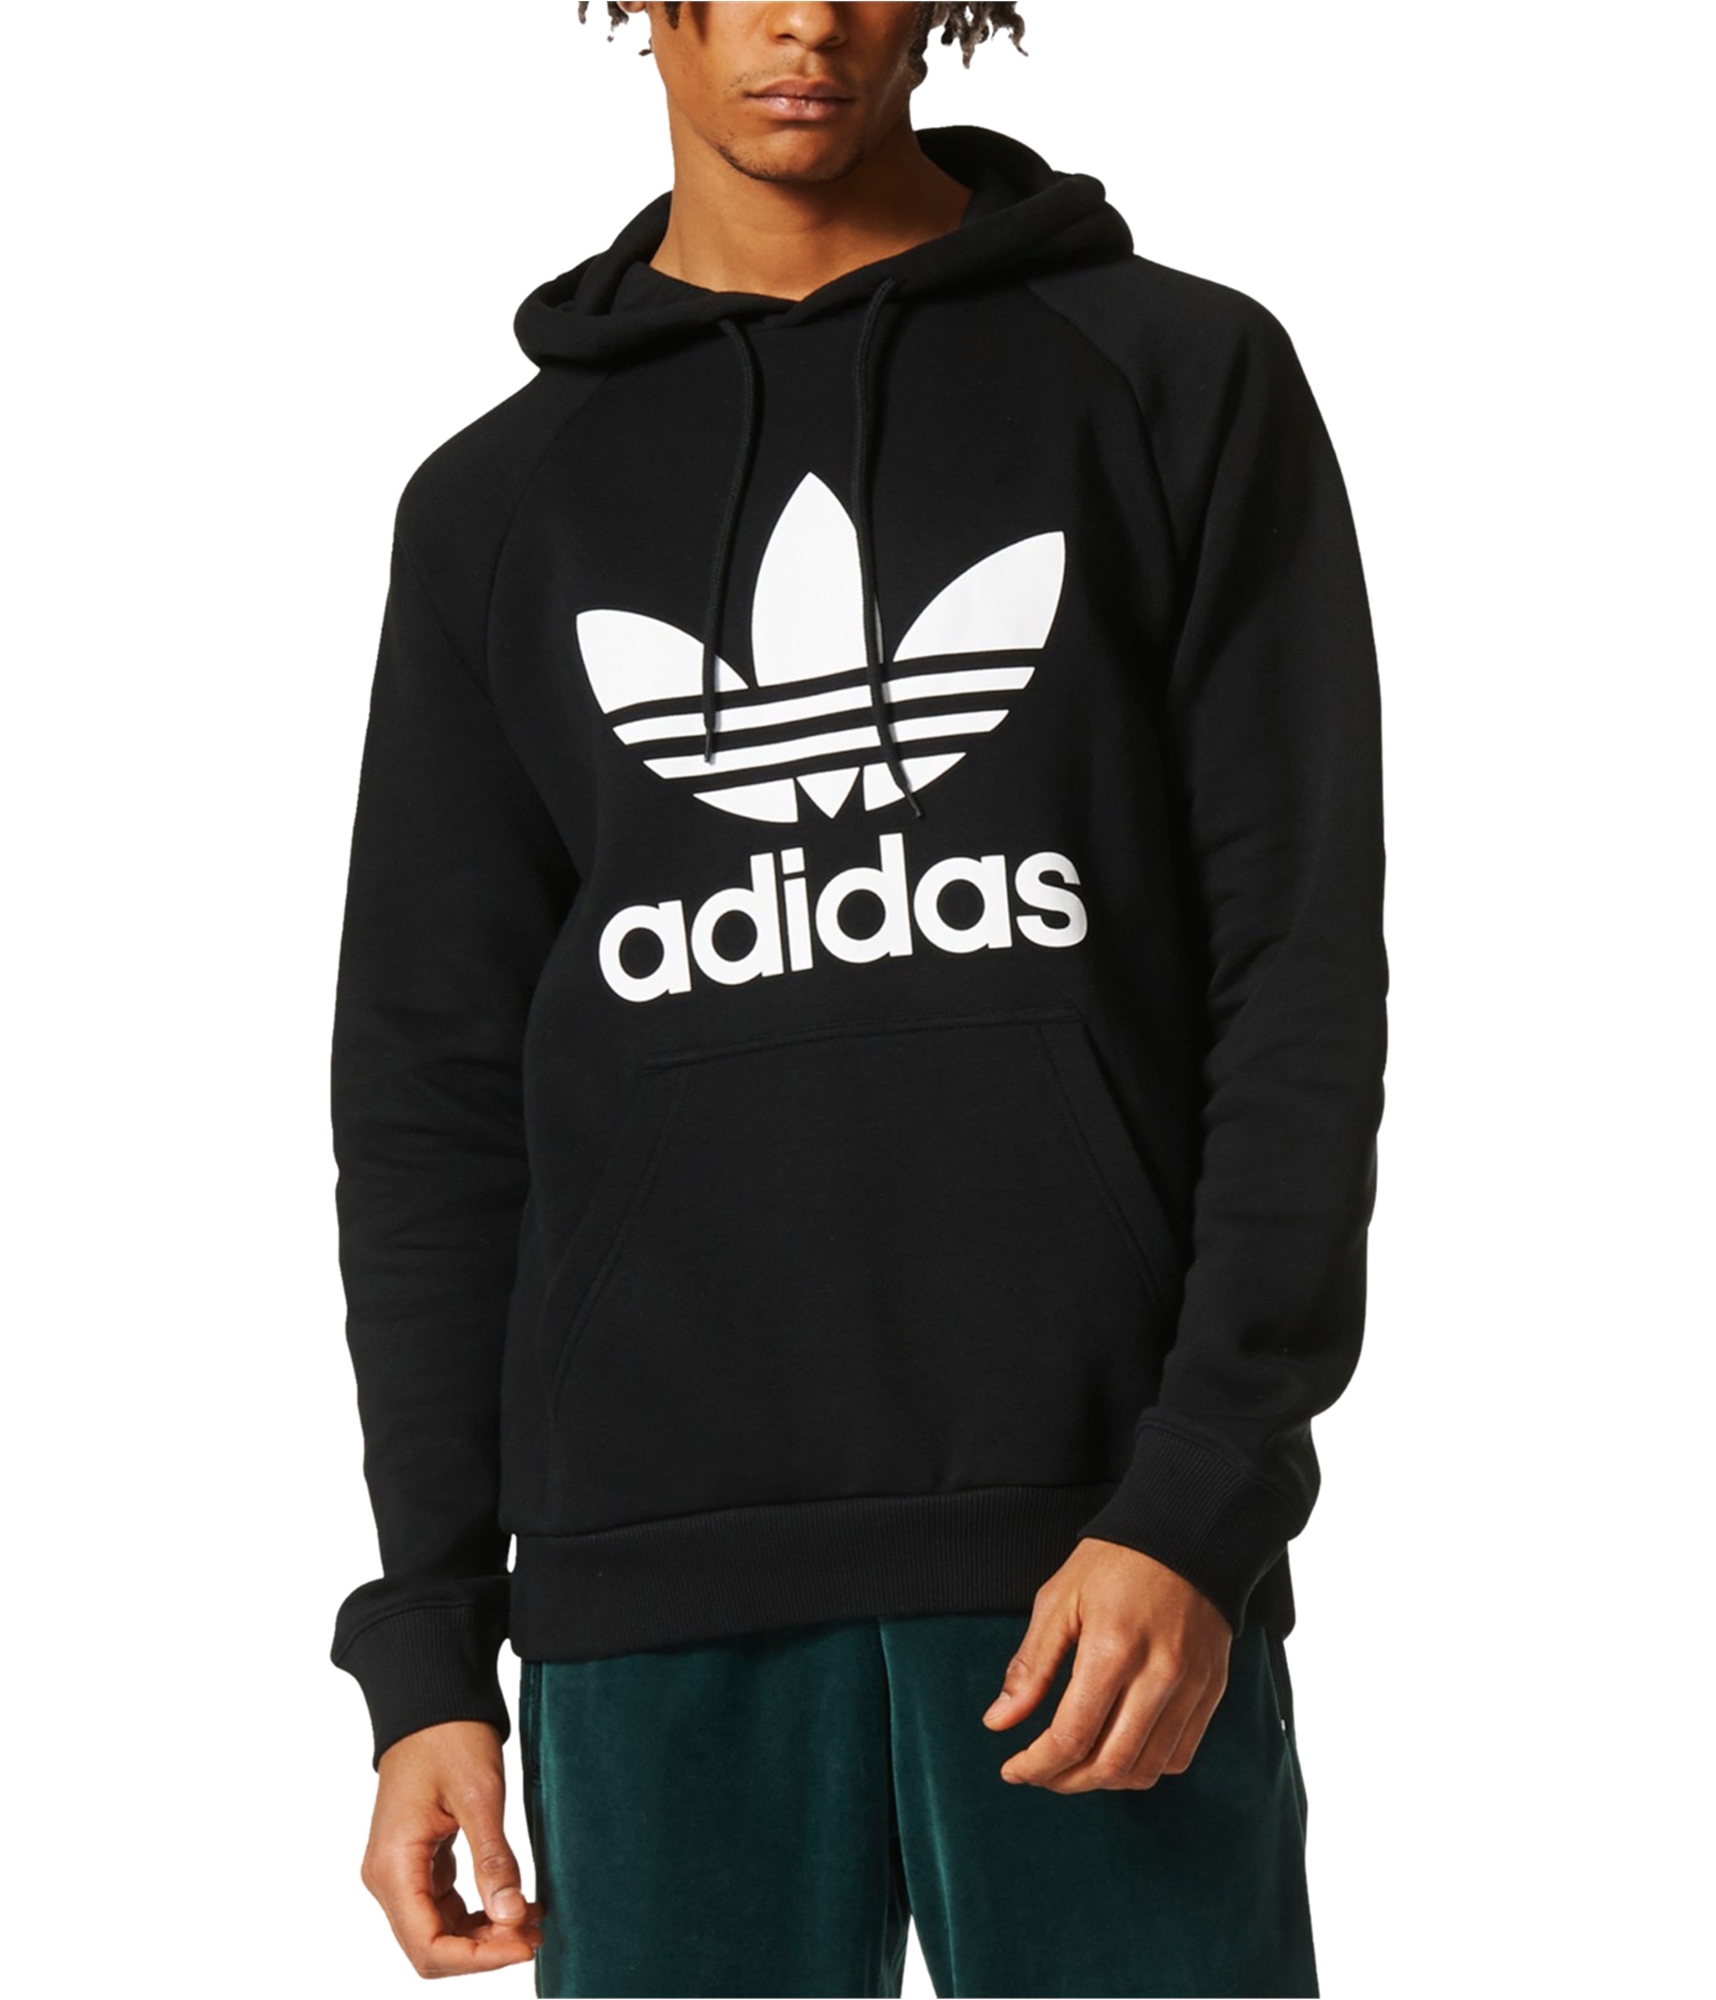 Buy a Mens Trefoil | Sweatshirt TagsWeekly.com, TW2 Adidas Hoodie Online